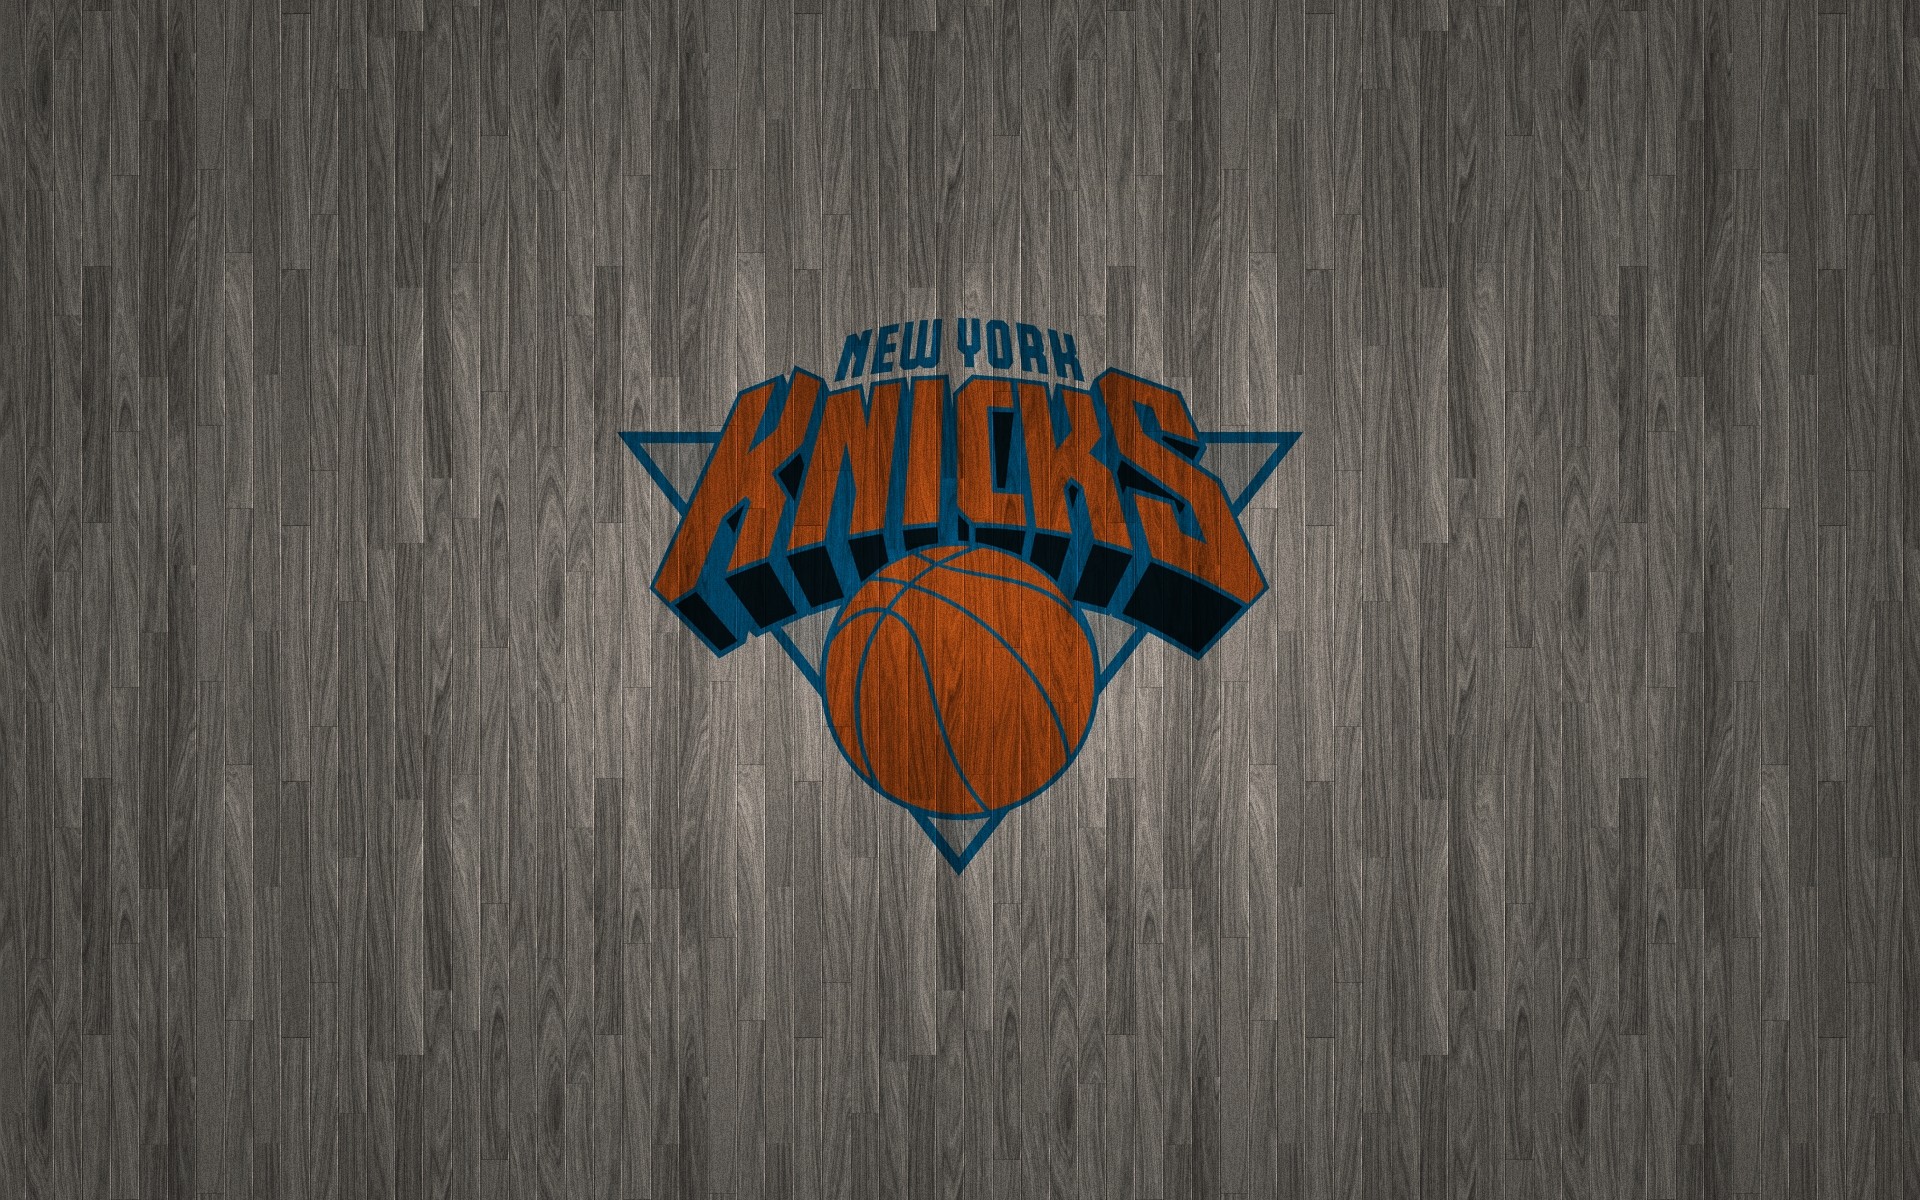 New York Knicks Wallpaper 1080p Festival